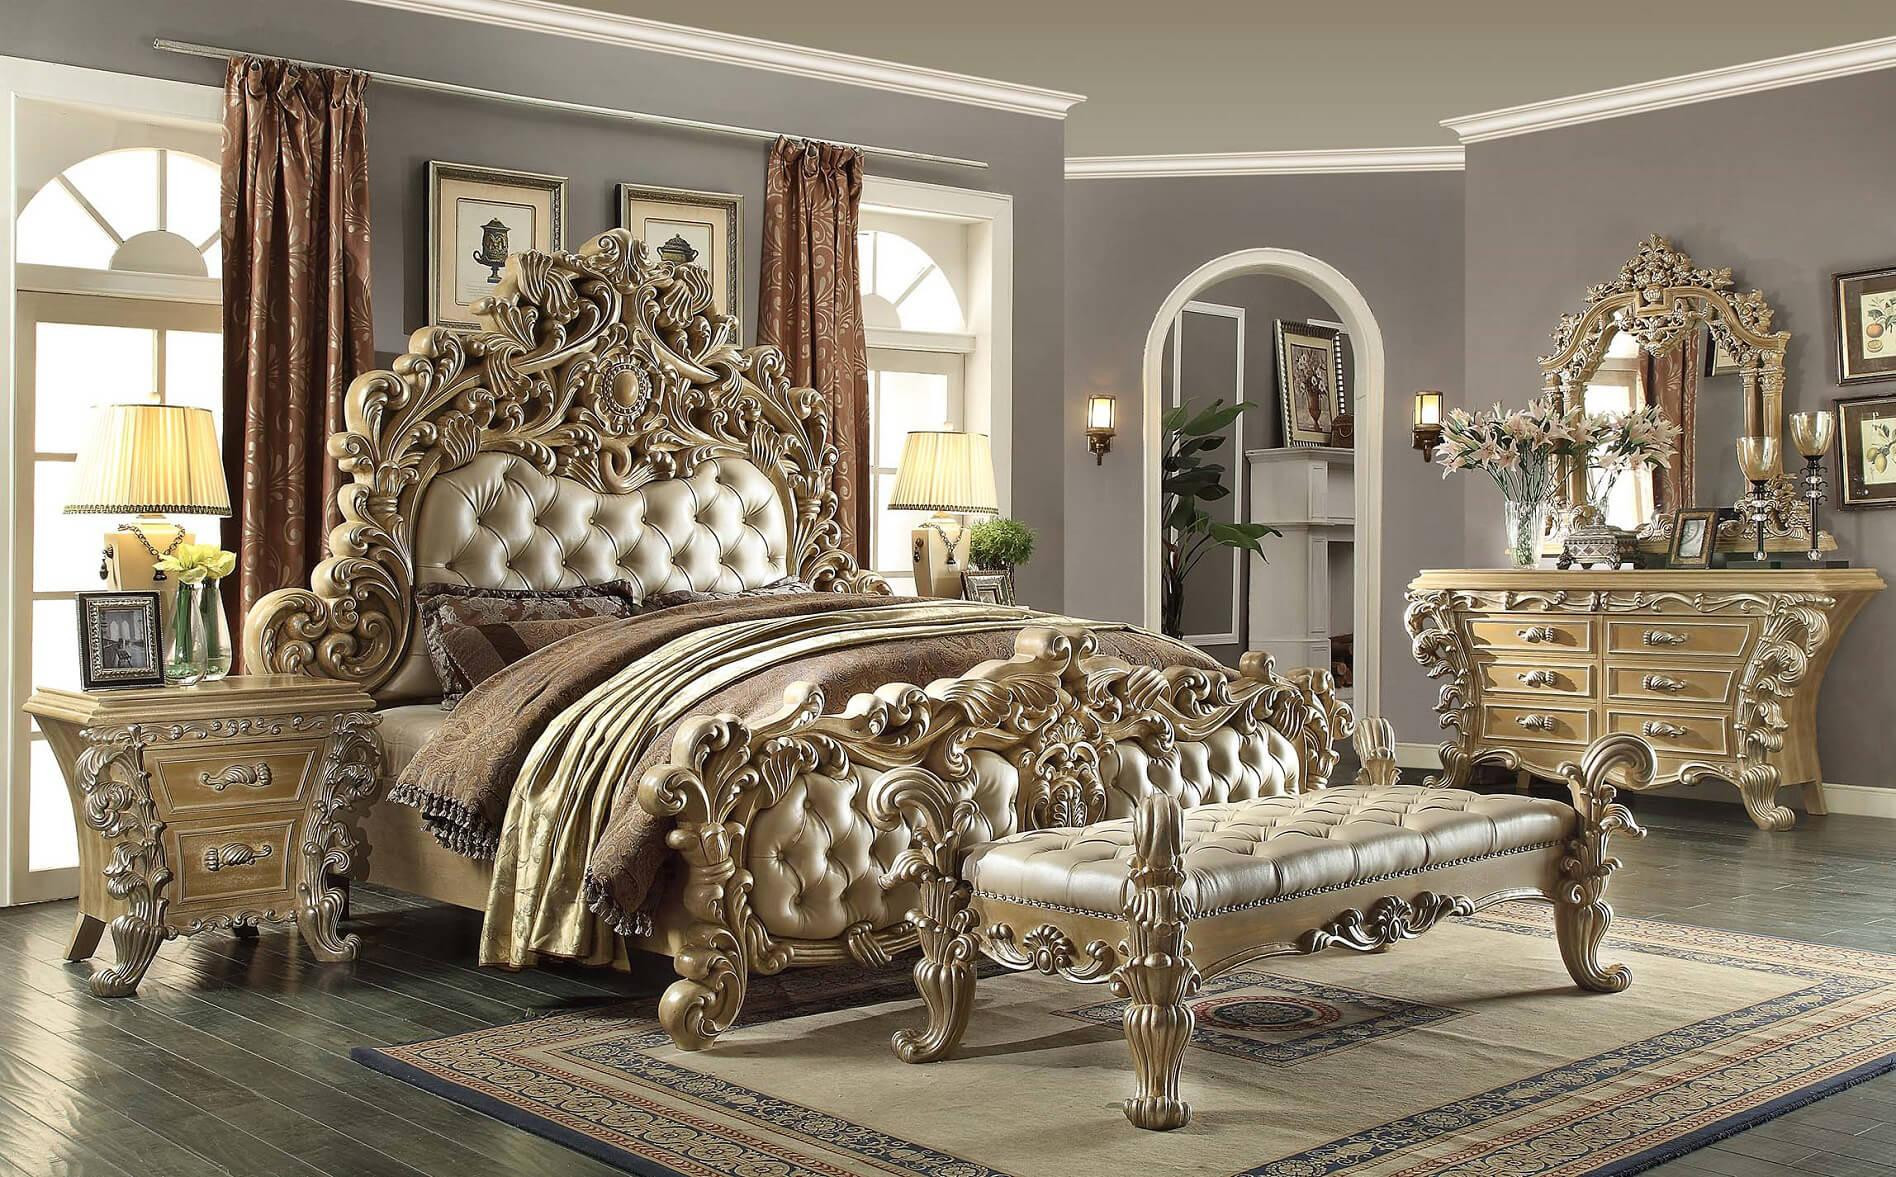 King Size Master Bedroom Sets
 Bedroom Give Your Bedroom Cozy Nuance With Master Bedroom